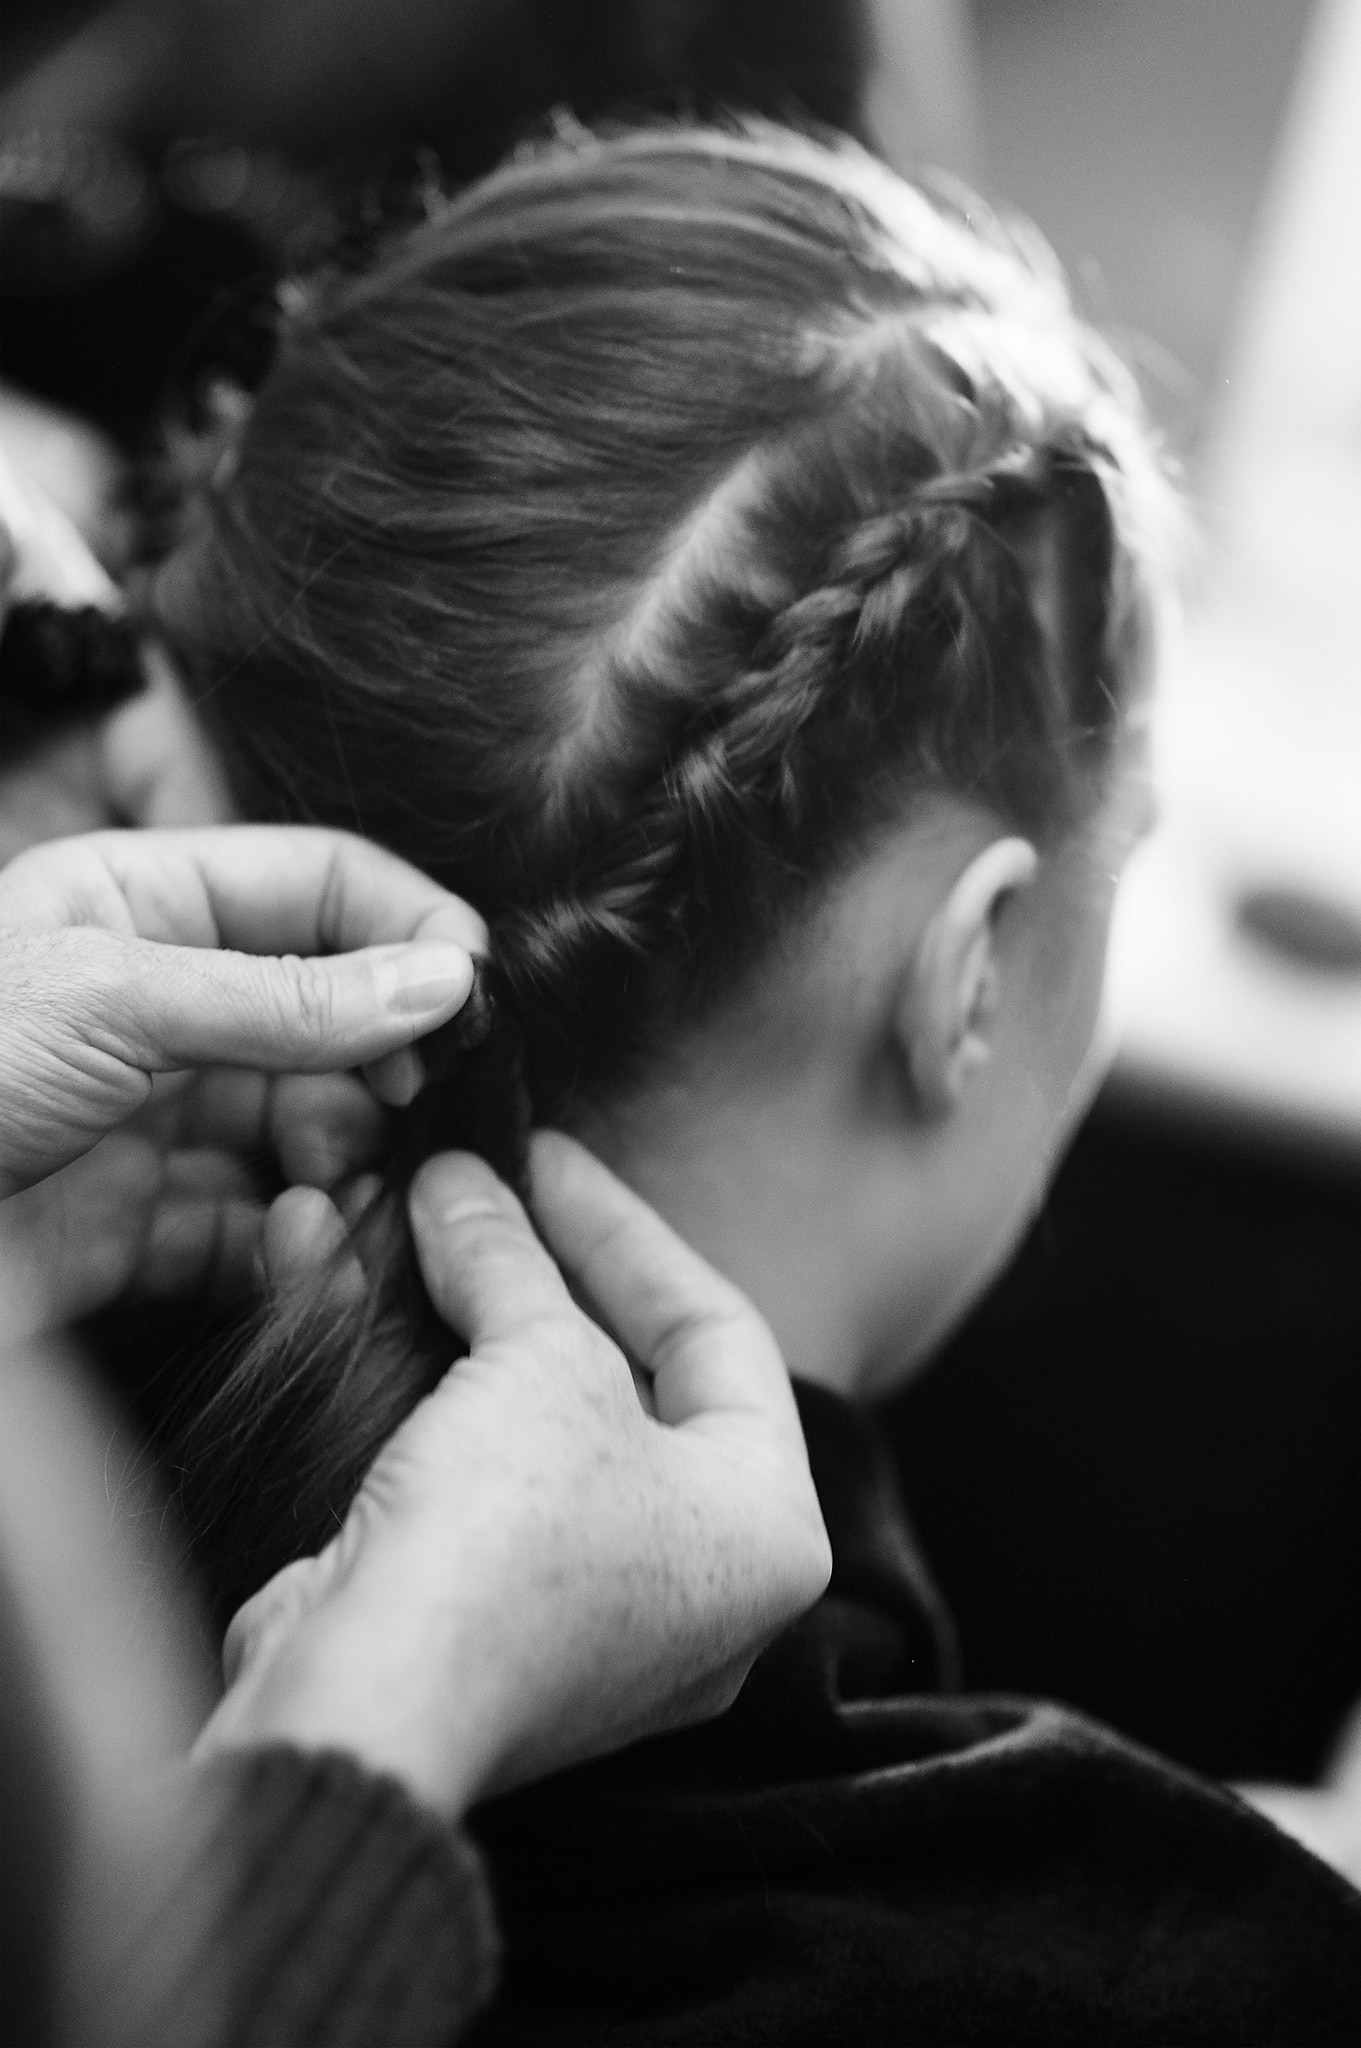 Um cabeleireiro preparando o cabelo escuro, ondulado e comprido de uma modelo em uma trança bem justa 